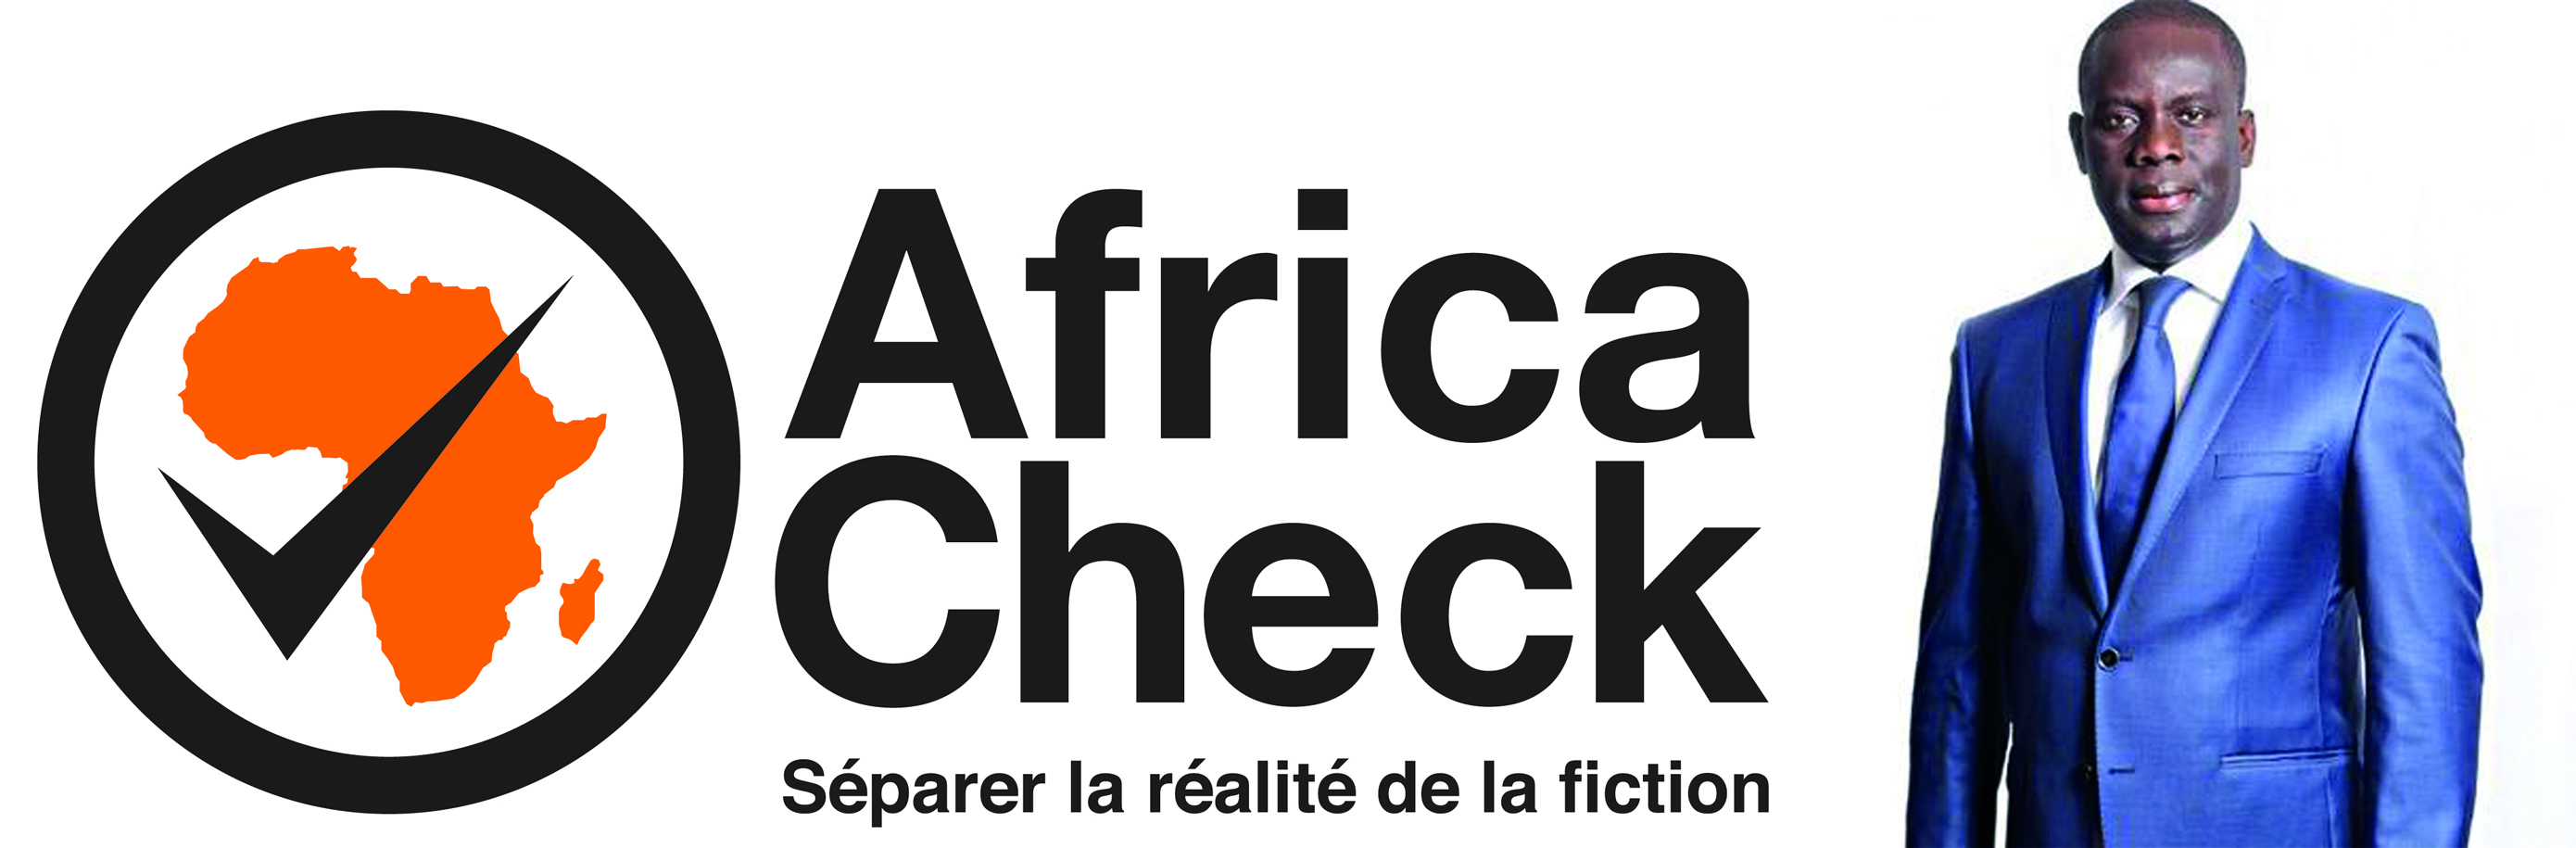 Africa Check dément Malick Gakou : Le Sénégal n’a jamais atteint un taux de croissance de 7% avant 2018